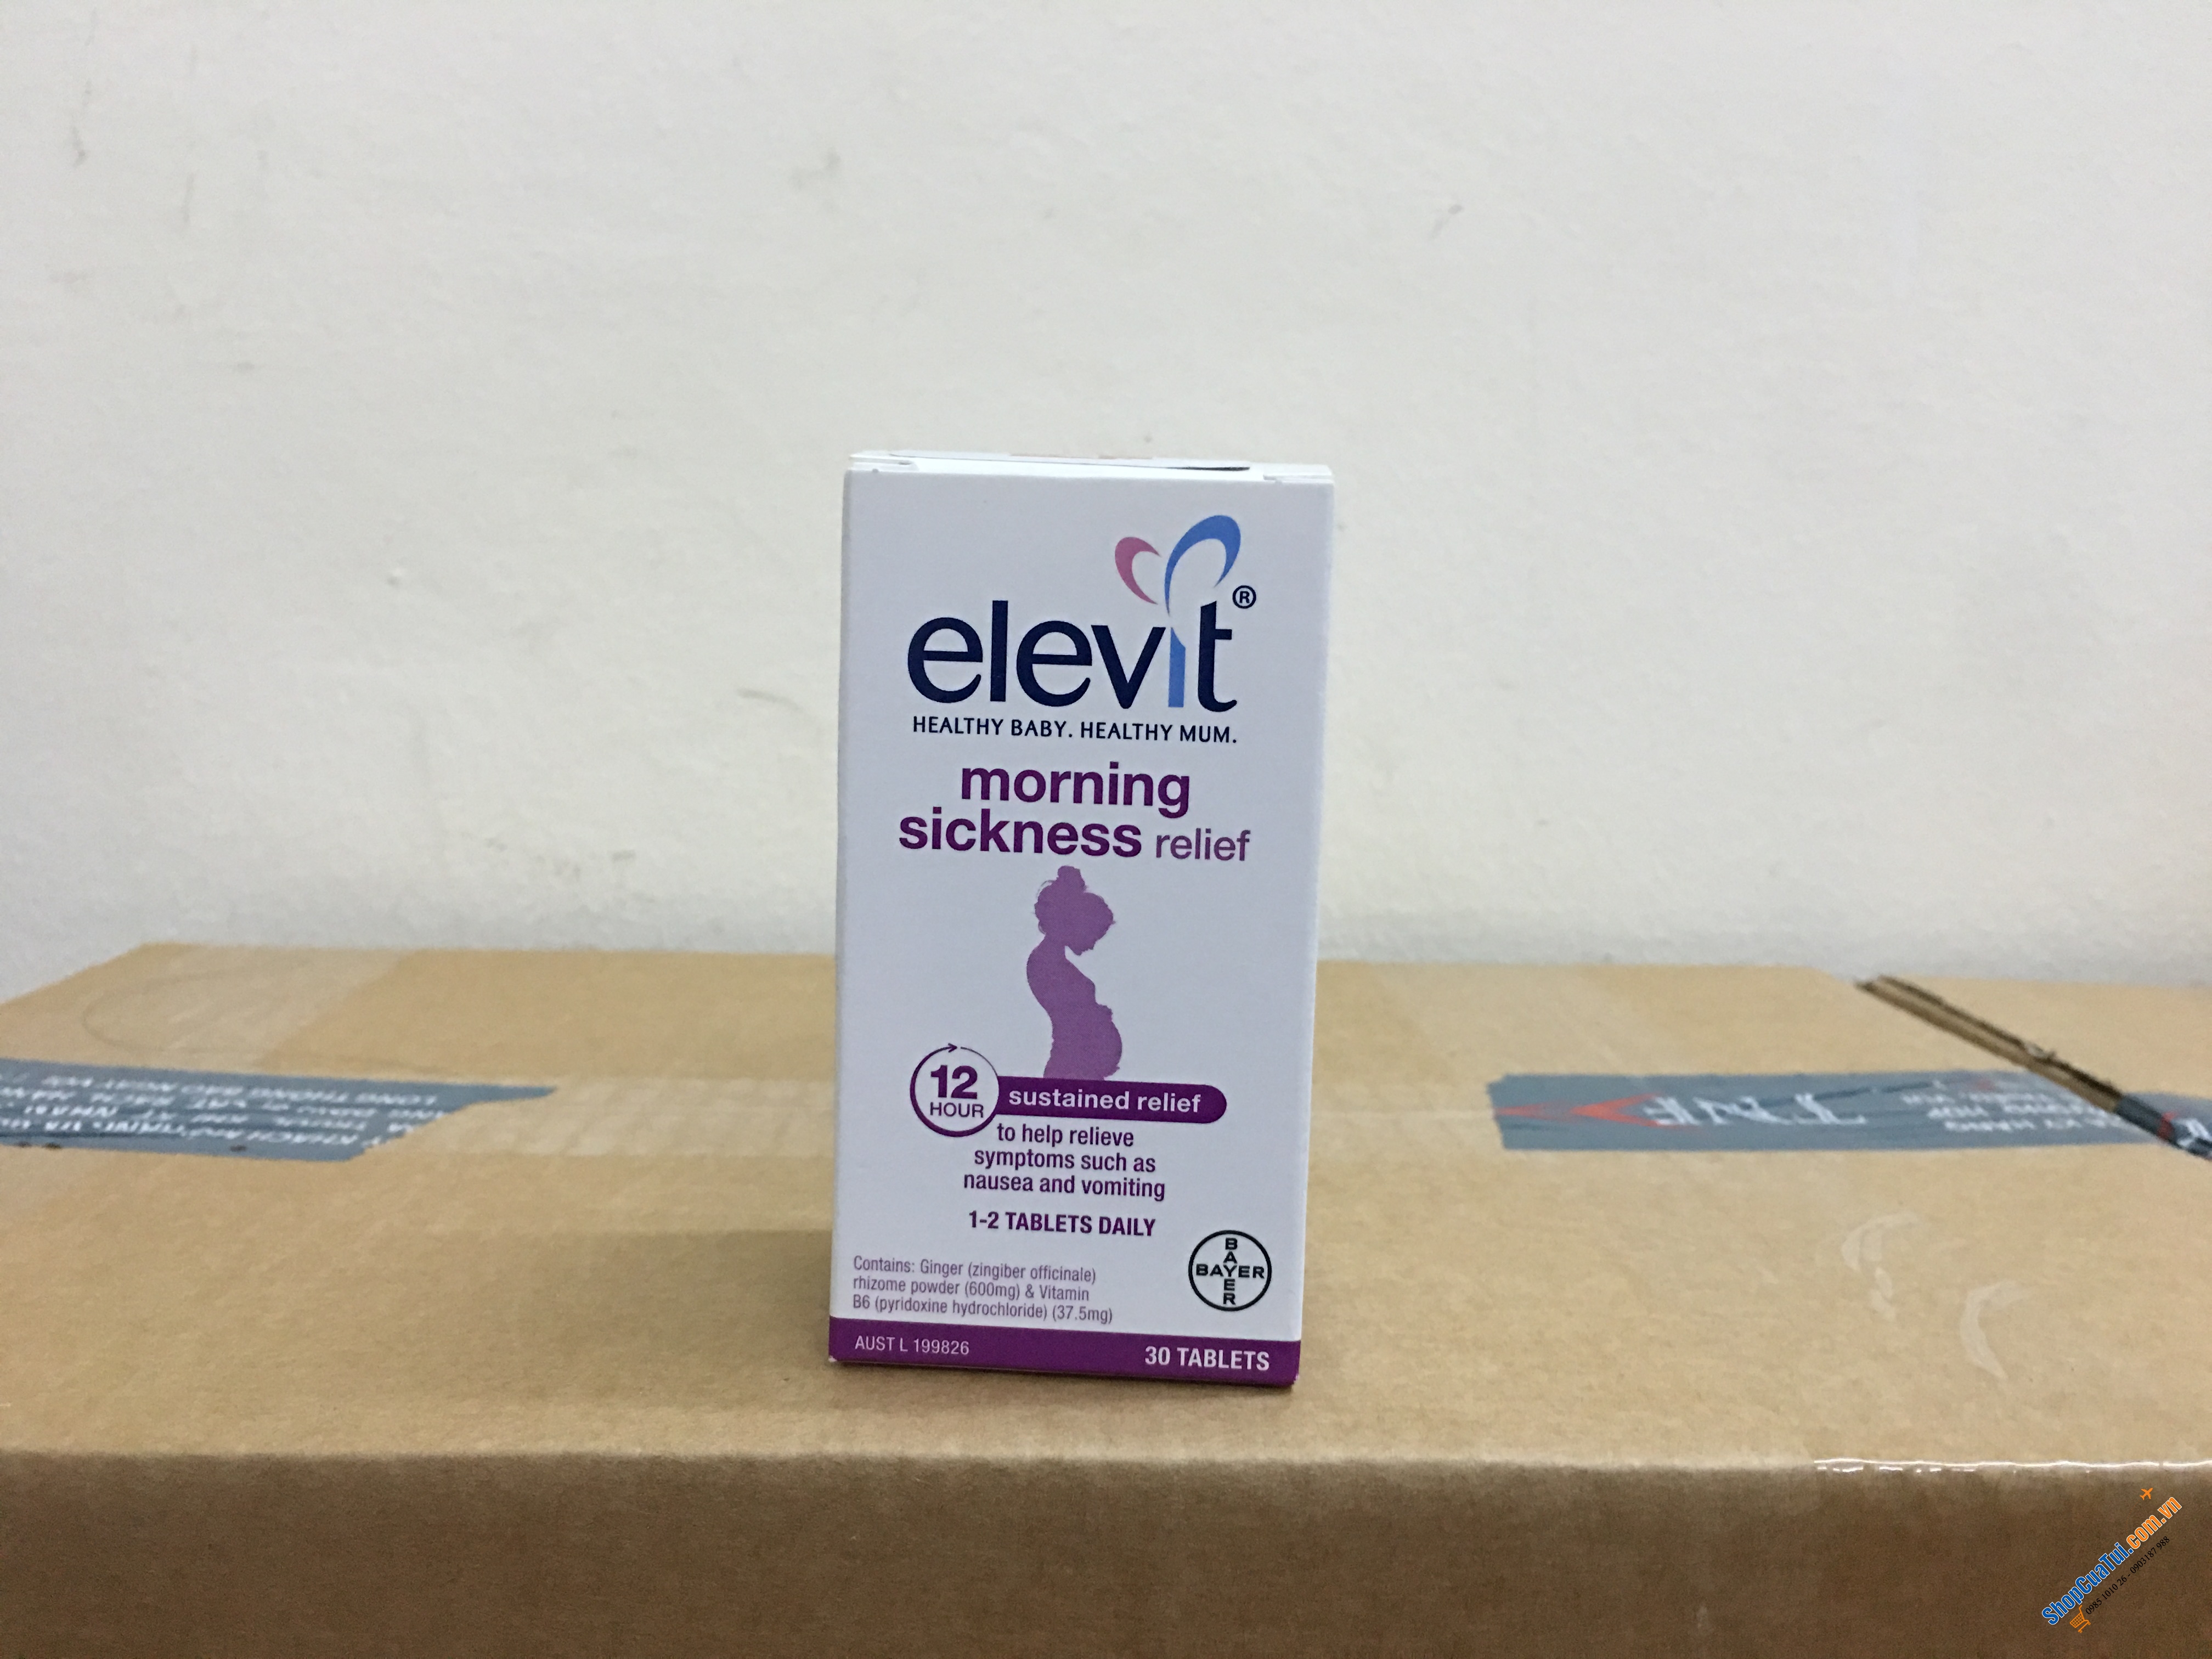 Elevit Morning Sickness Relief: Viên uống giảm các triệu chứng ốm nghén